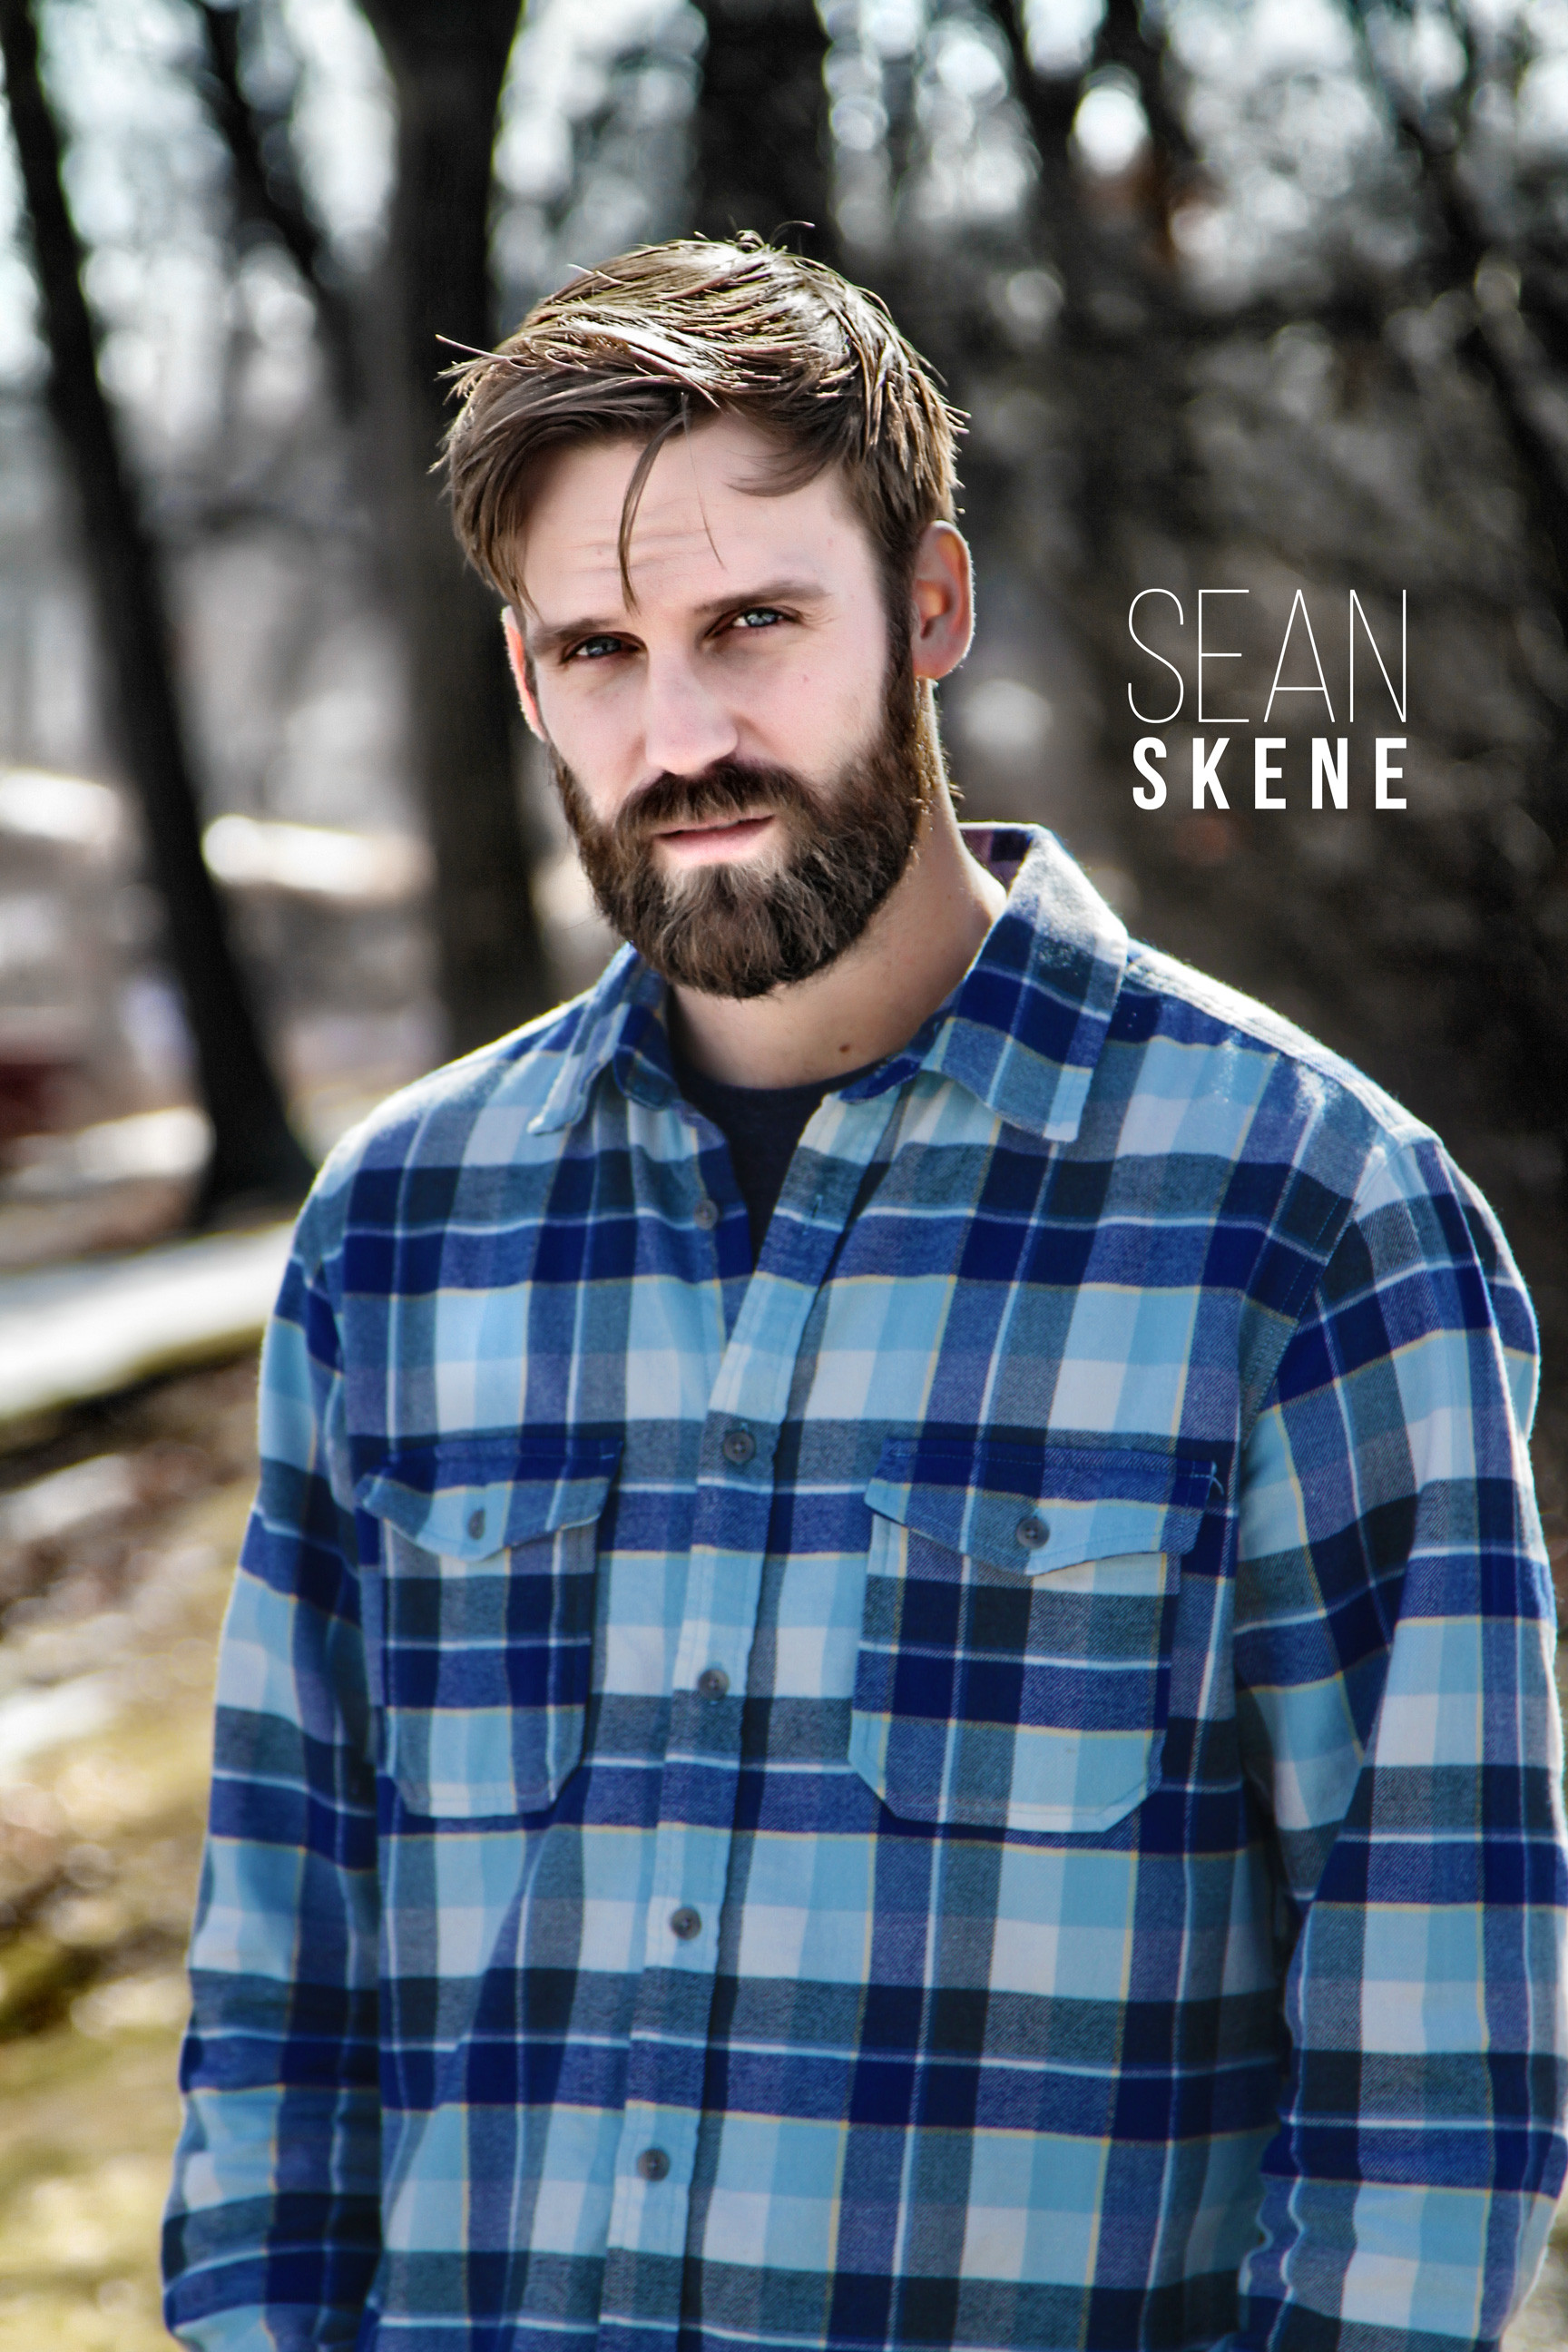 Sean Skene